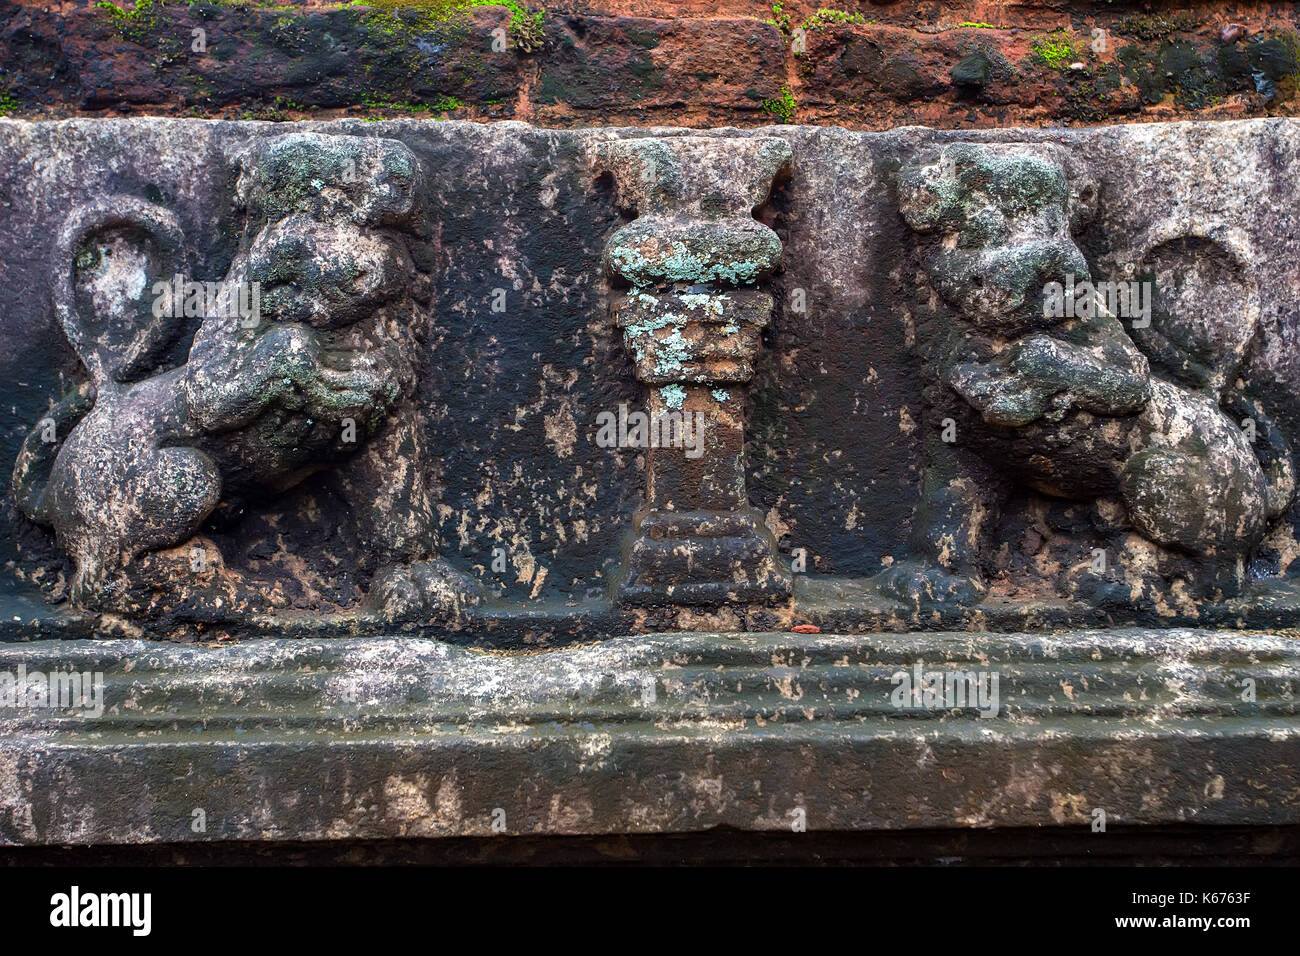 Sculptures de lion polonnaruwa au Sri Lanka Banque D'Images